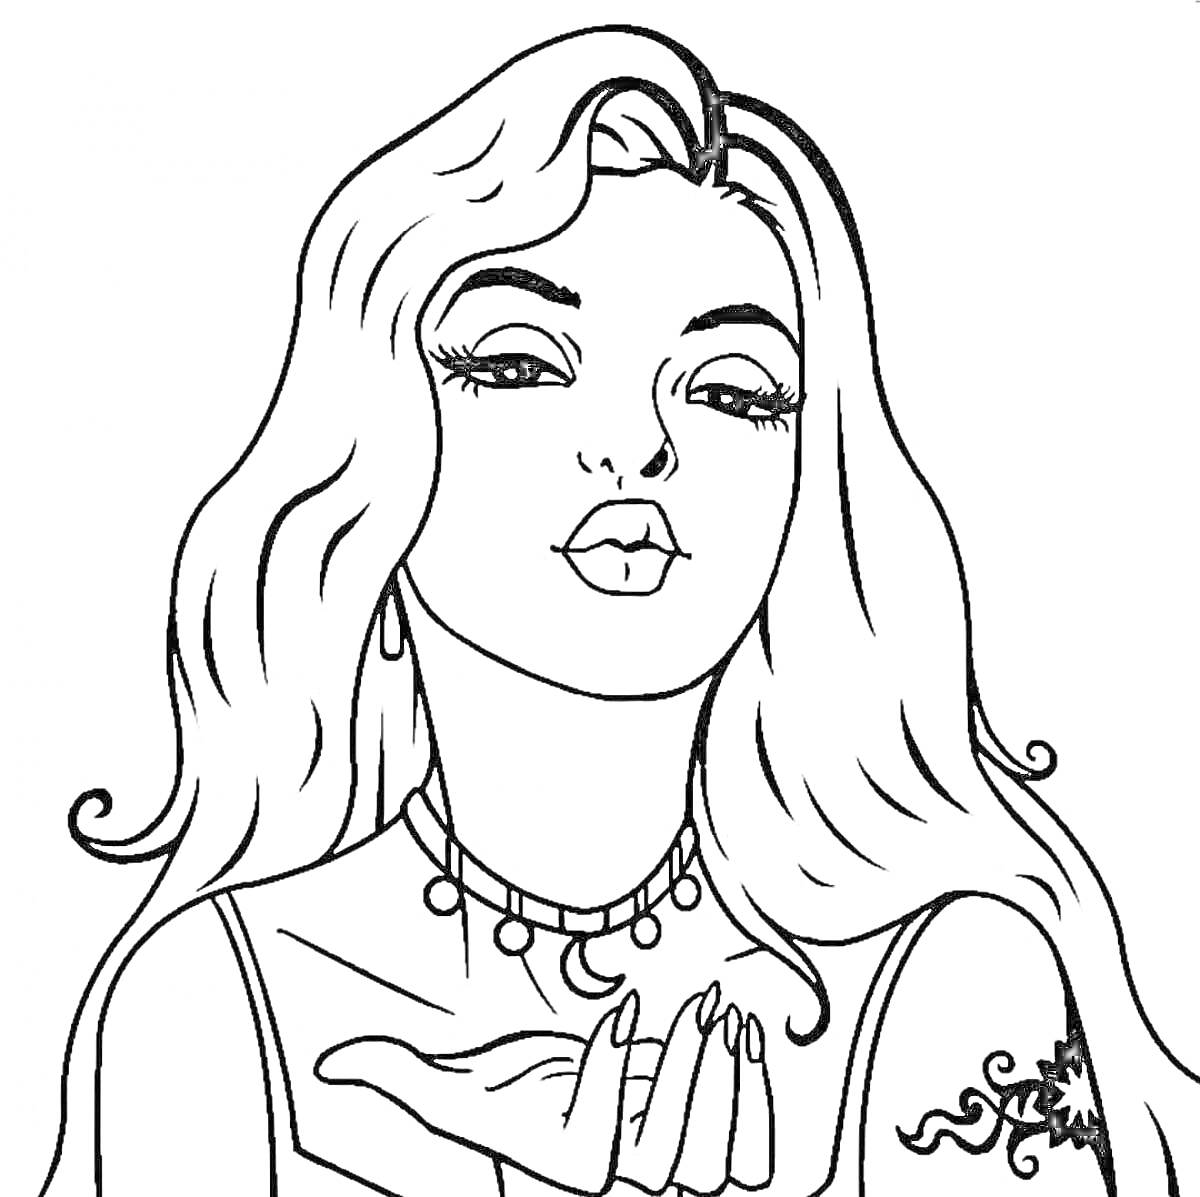 Раскраска Женщина с длинными волосами, ожерельем и татуировкой на руке, делающая жест поцелуя